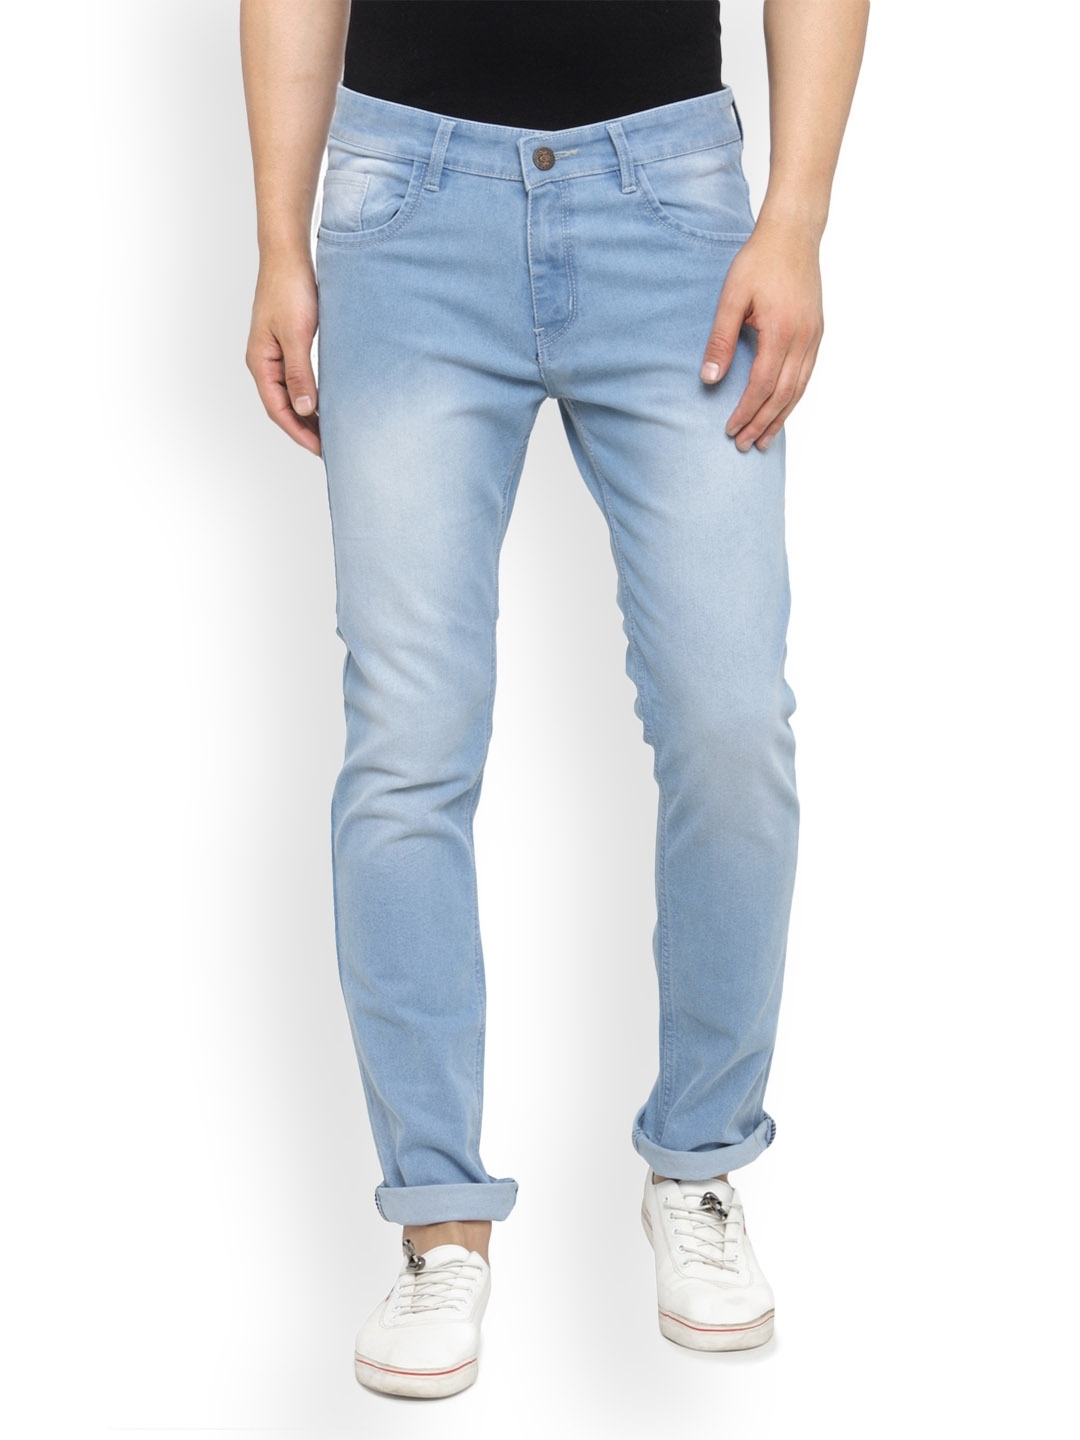 Buy JAINISH Men Blue Slim Fit Mid Rise Clean Look Jeans - Jeans for Men ...